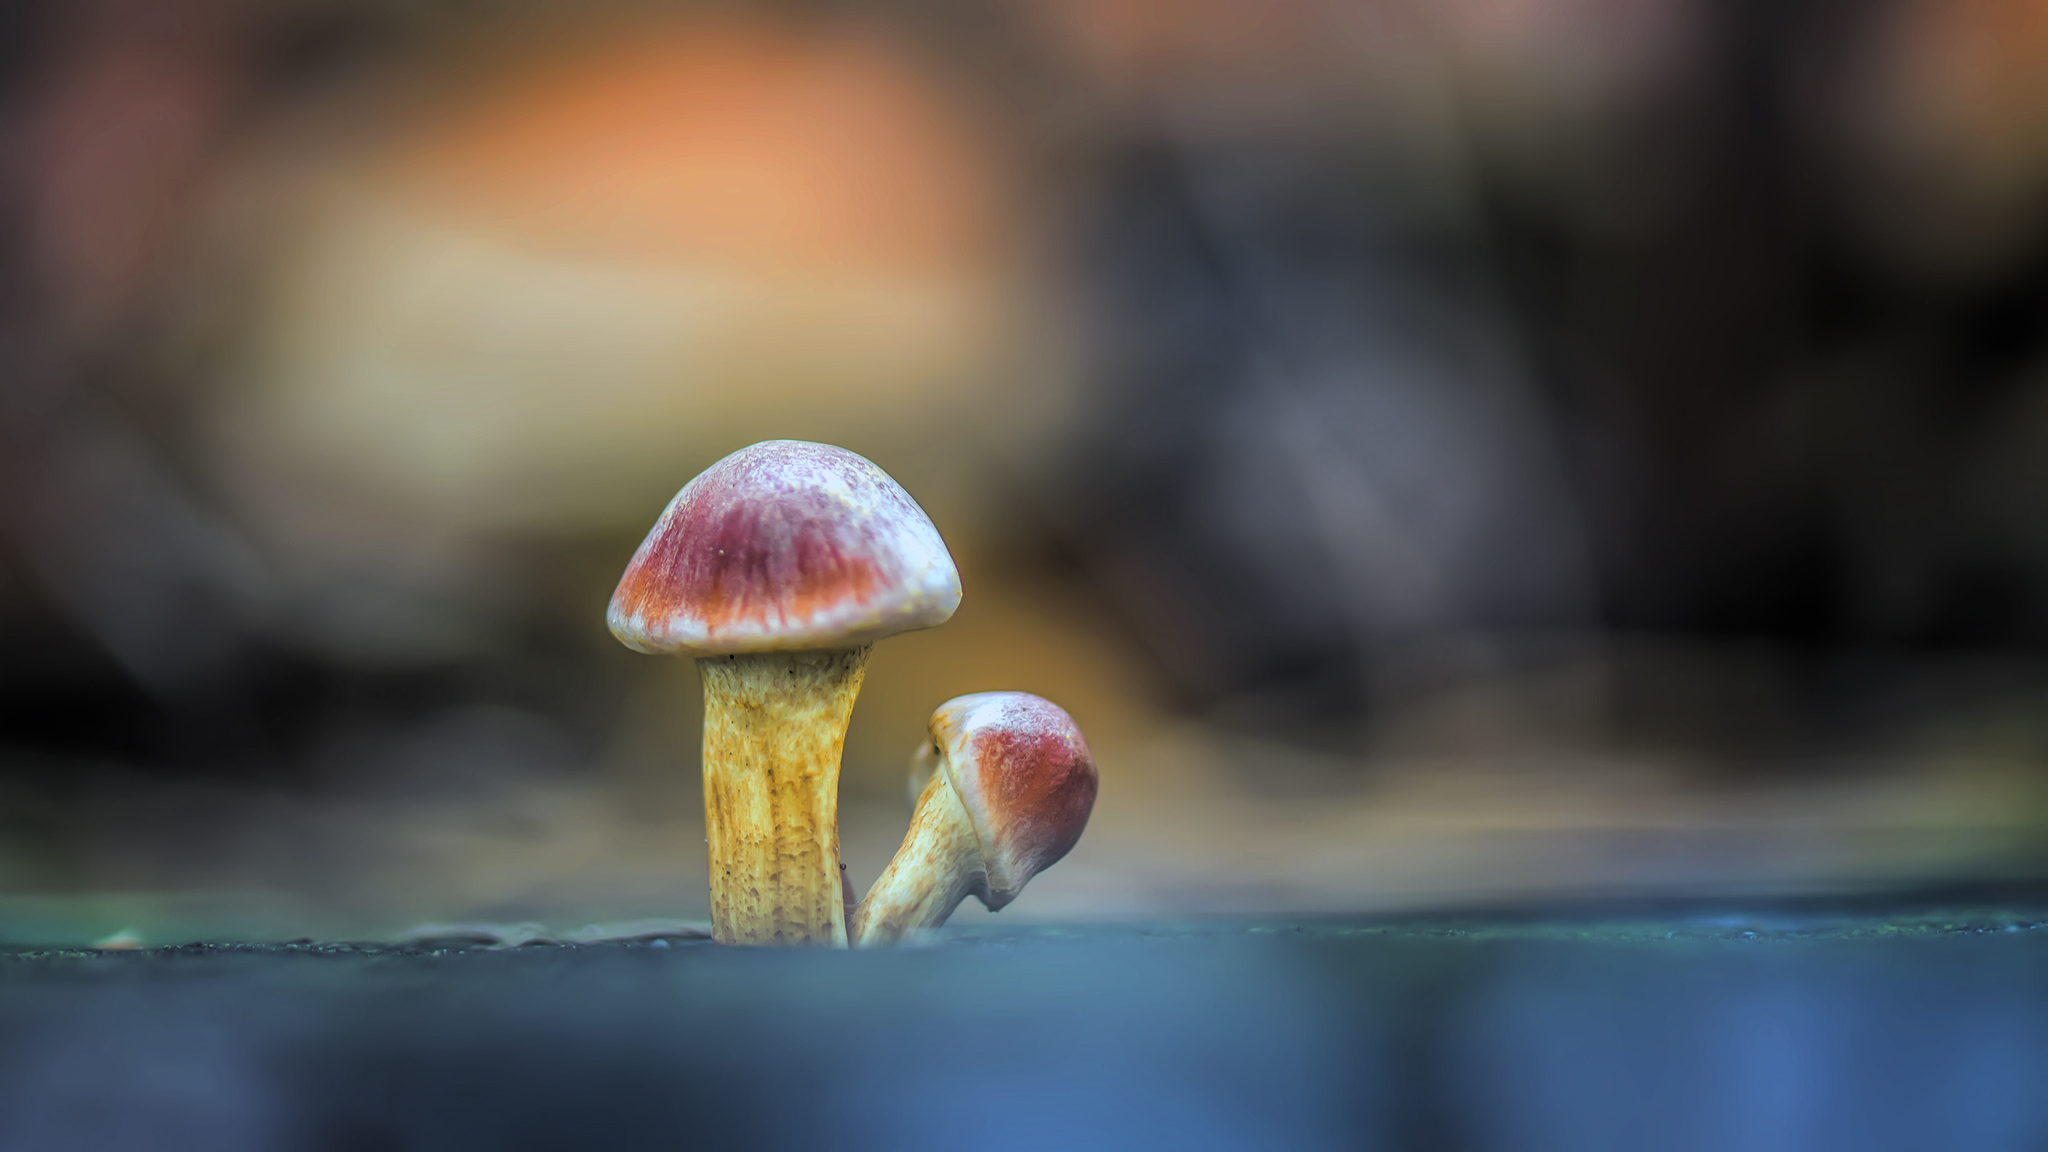 Little mushrooms ...